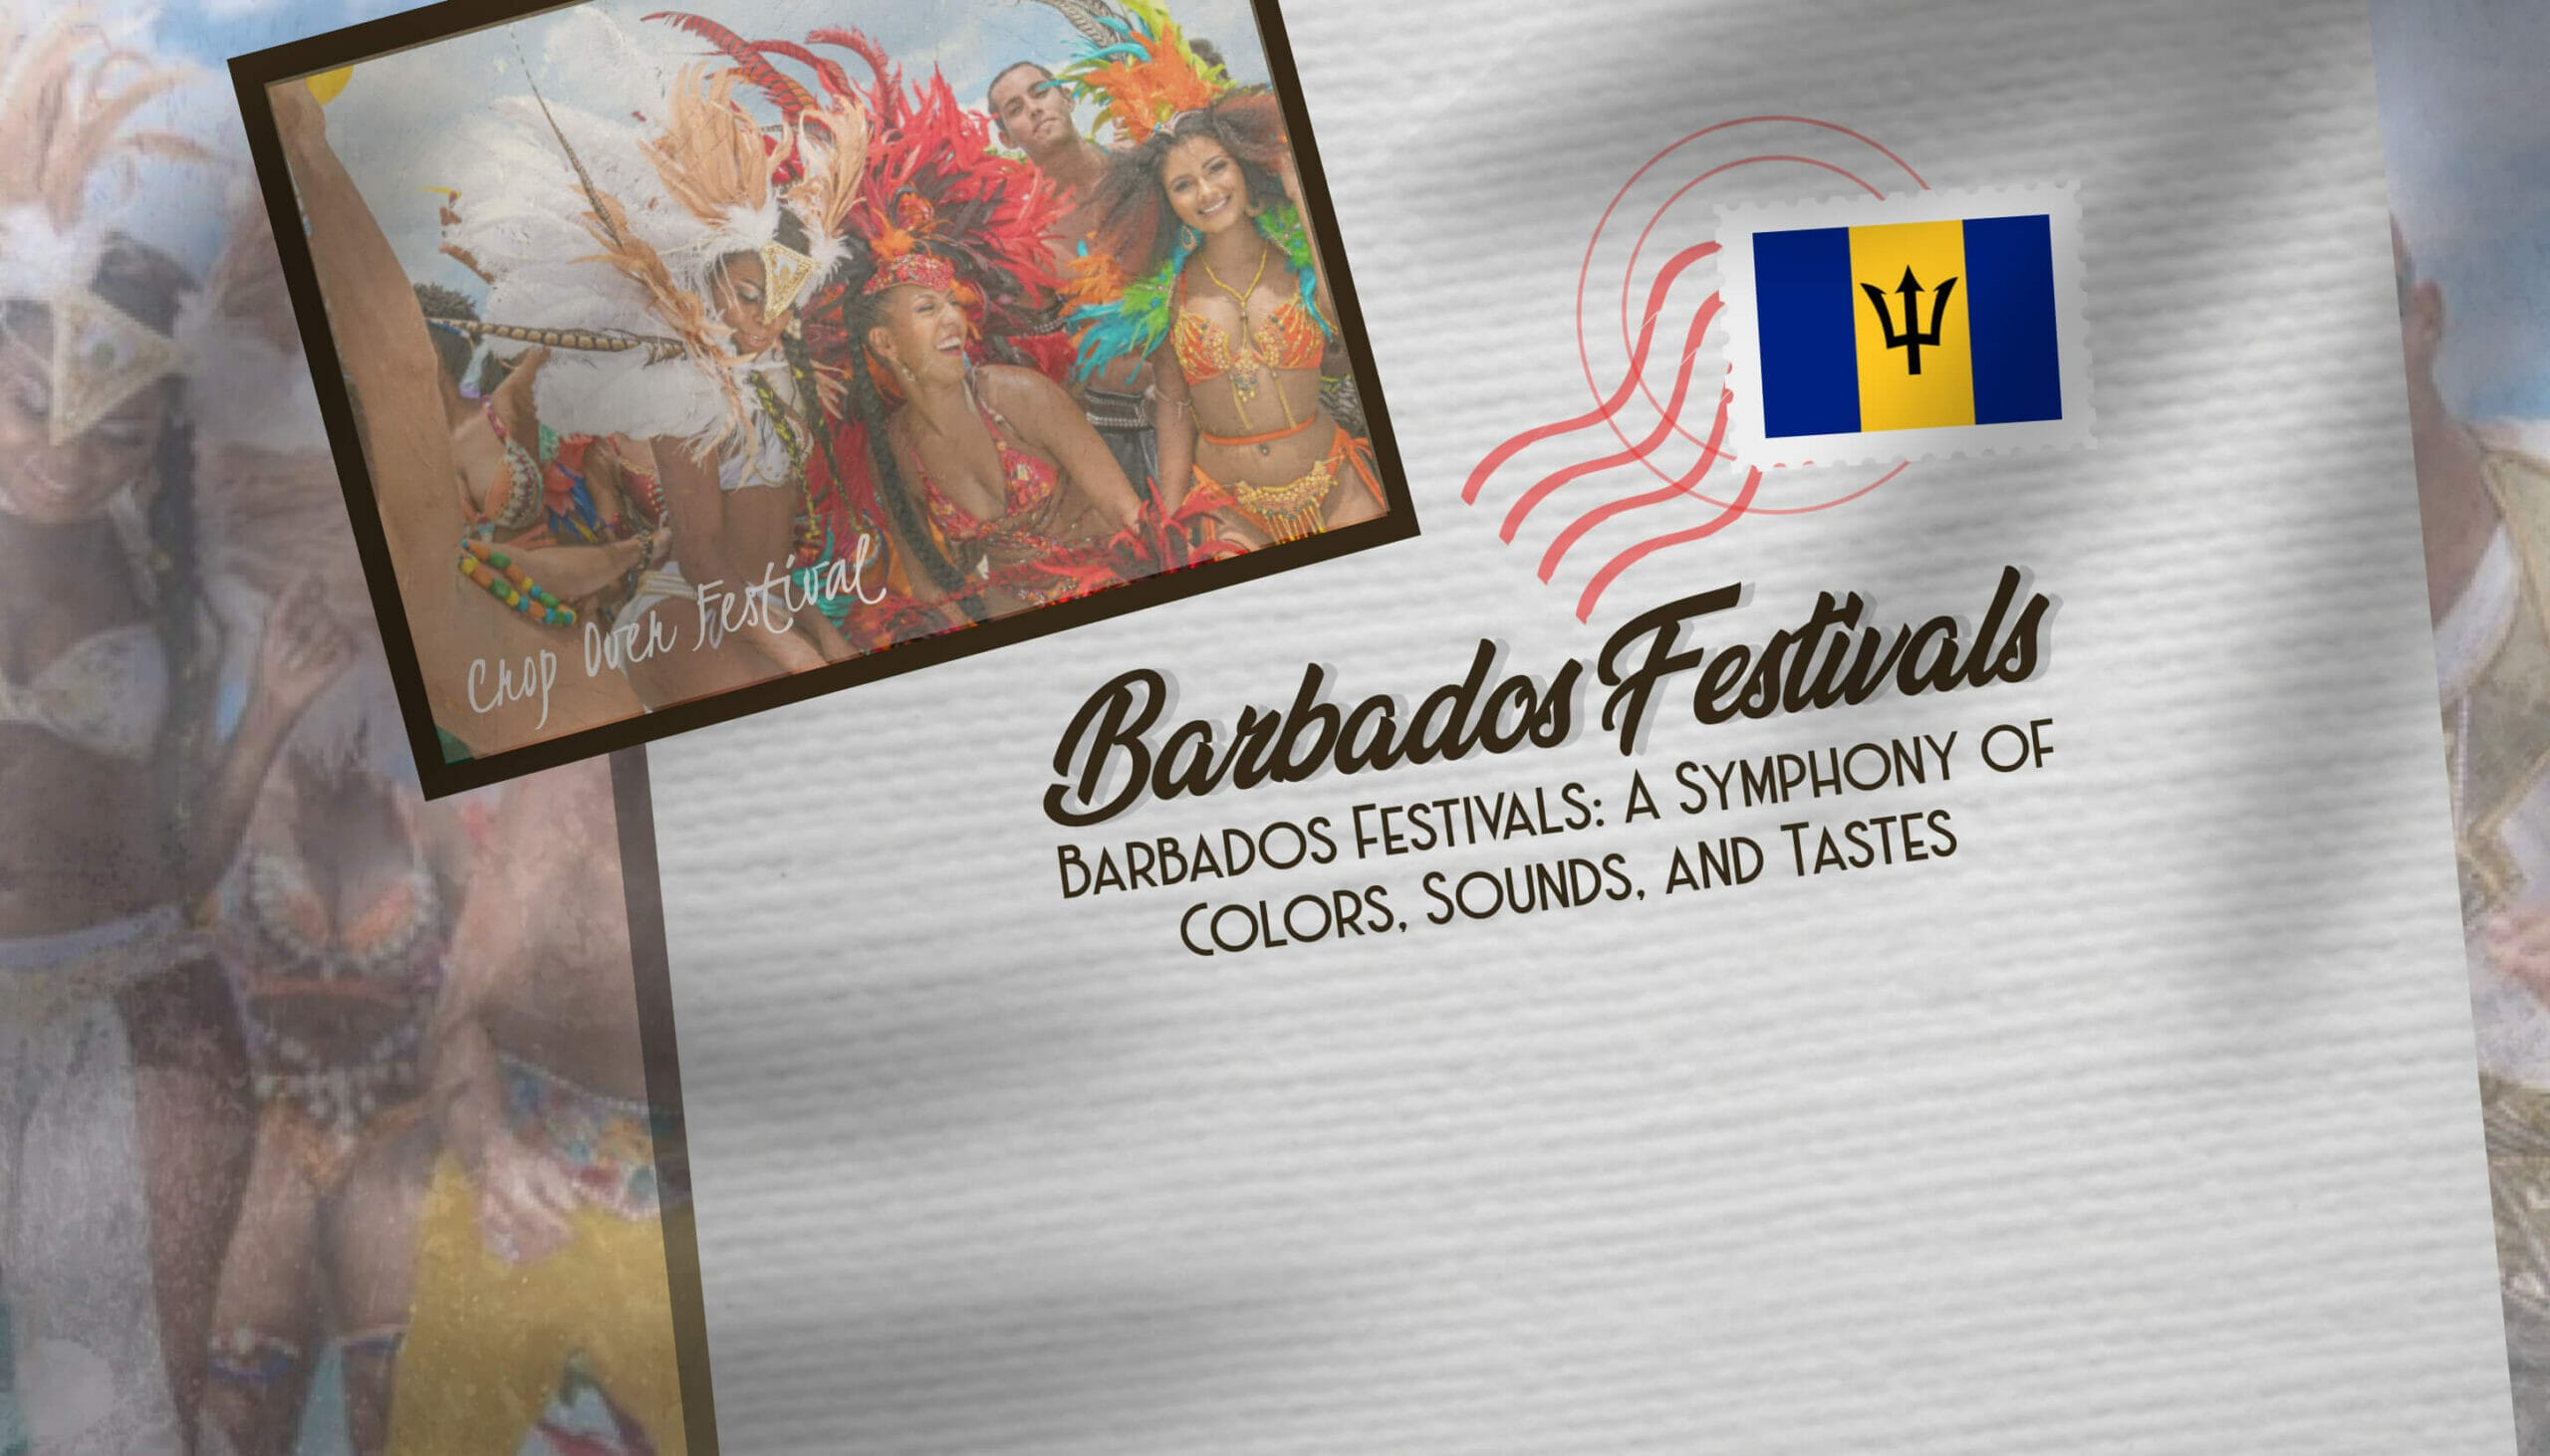 Barbados Festivals